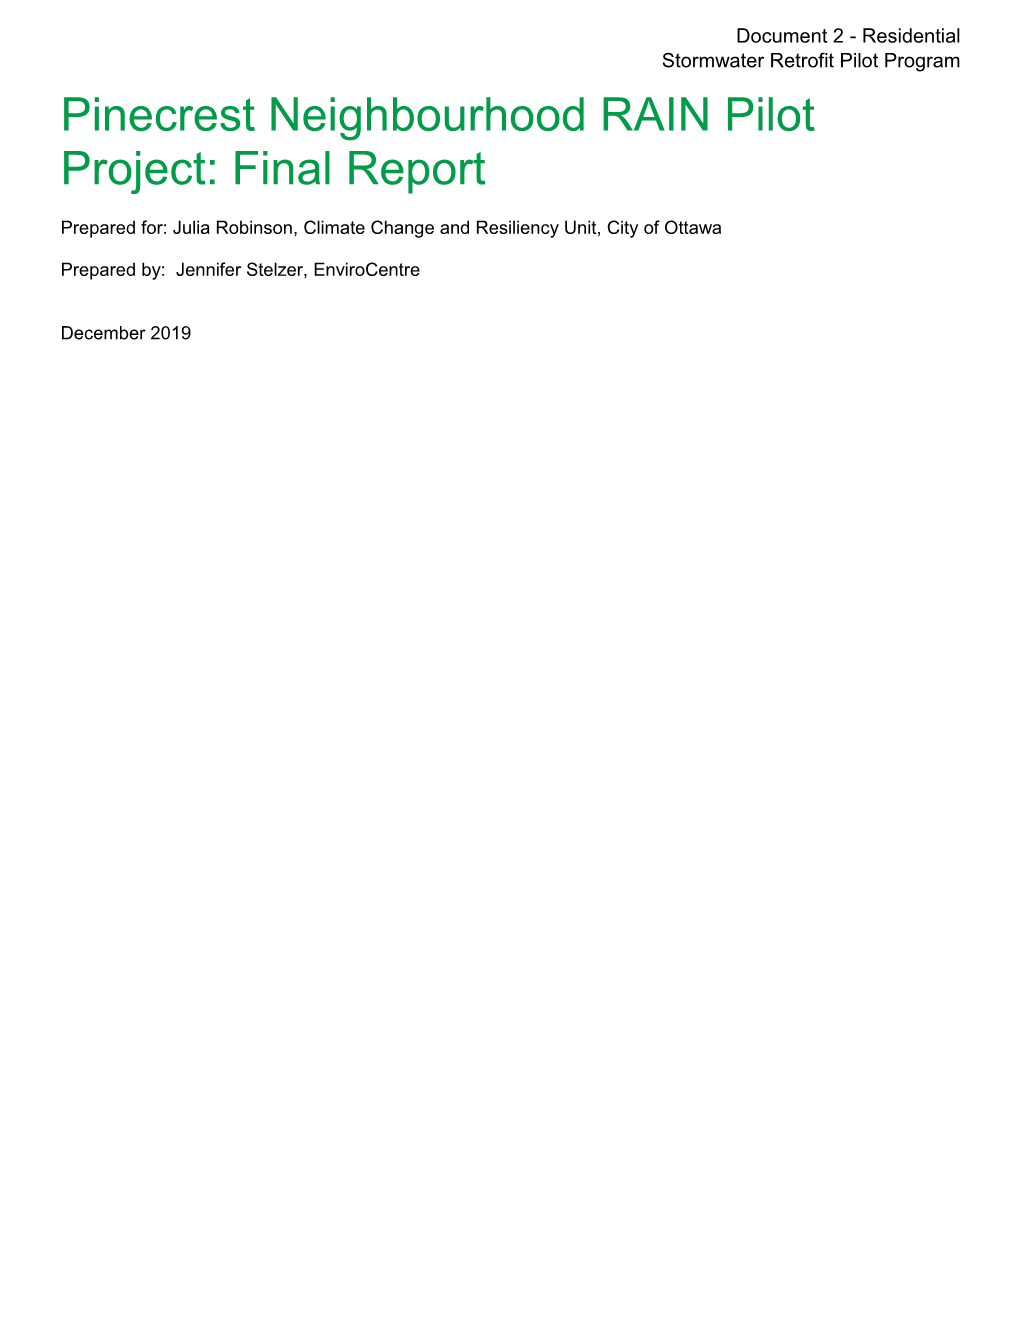 Pinecrest Neighbourhood RAIN Pilot Project: Final Report